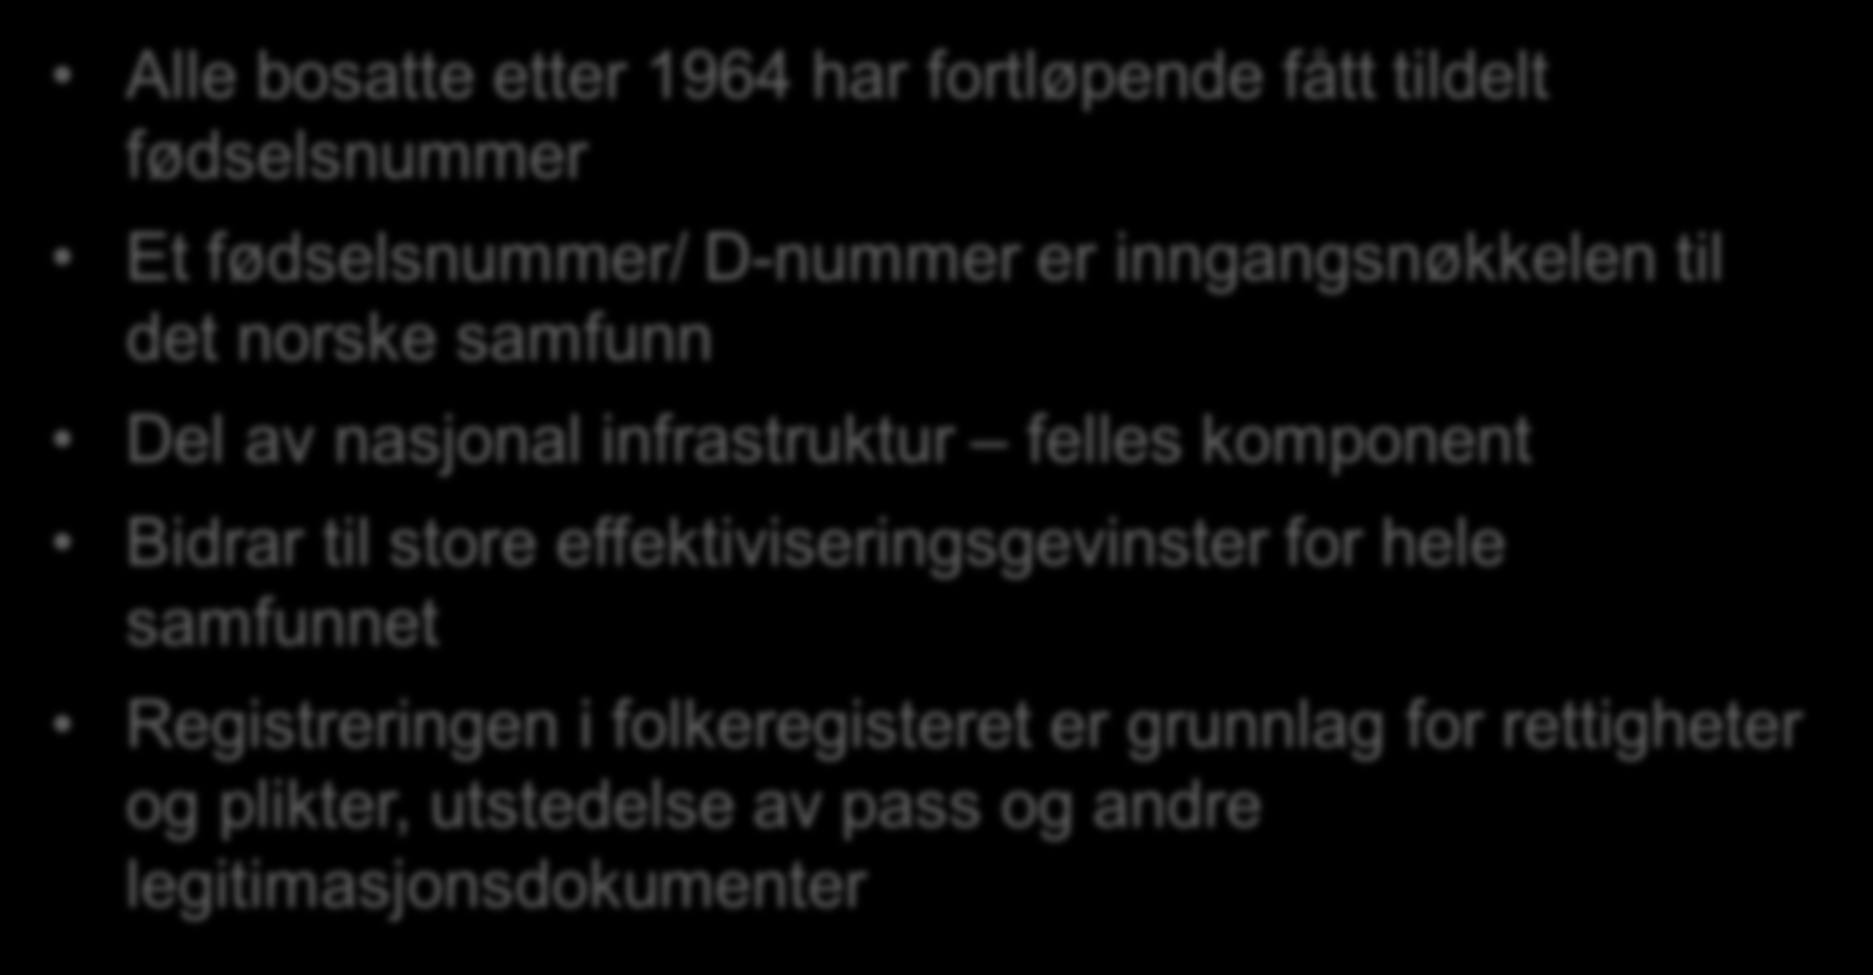 Bakgrunn - Dagens Folkeregister Alle bosatte etter 1964 har fortløpende fått tildelt fødselsnummer Et fødselsnummer/ D-nummer er inngangsnøkkelen til det norske samfunn Del av nasjonal infrastruktur